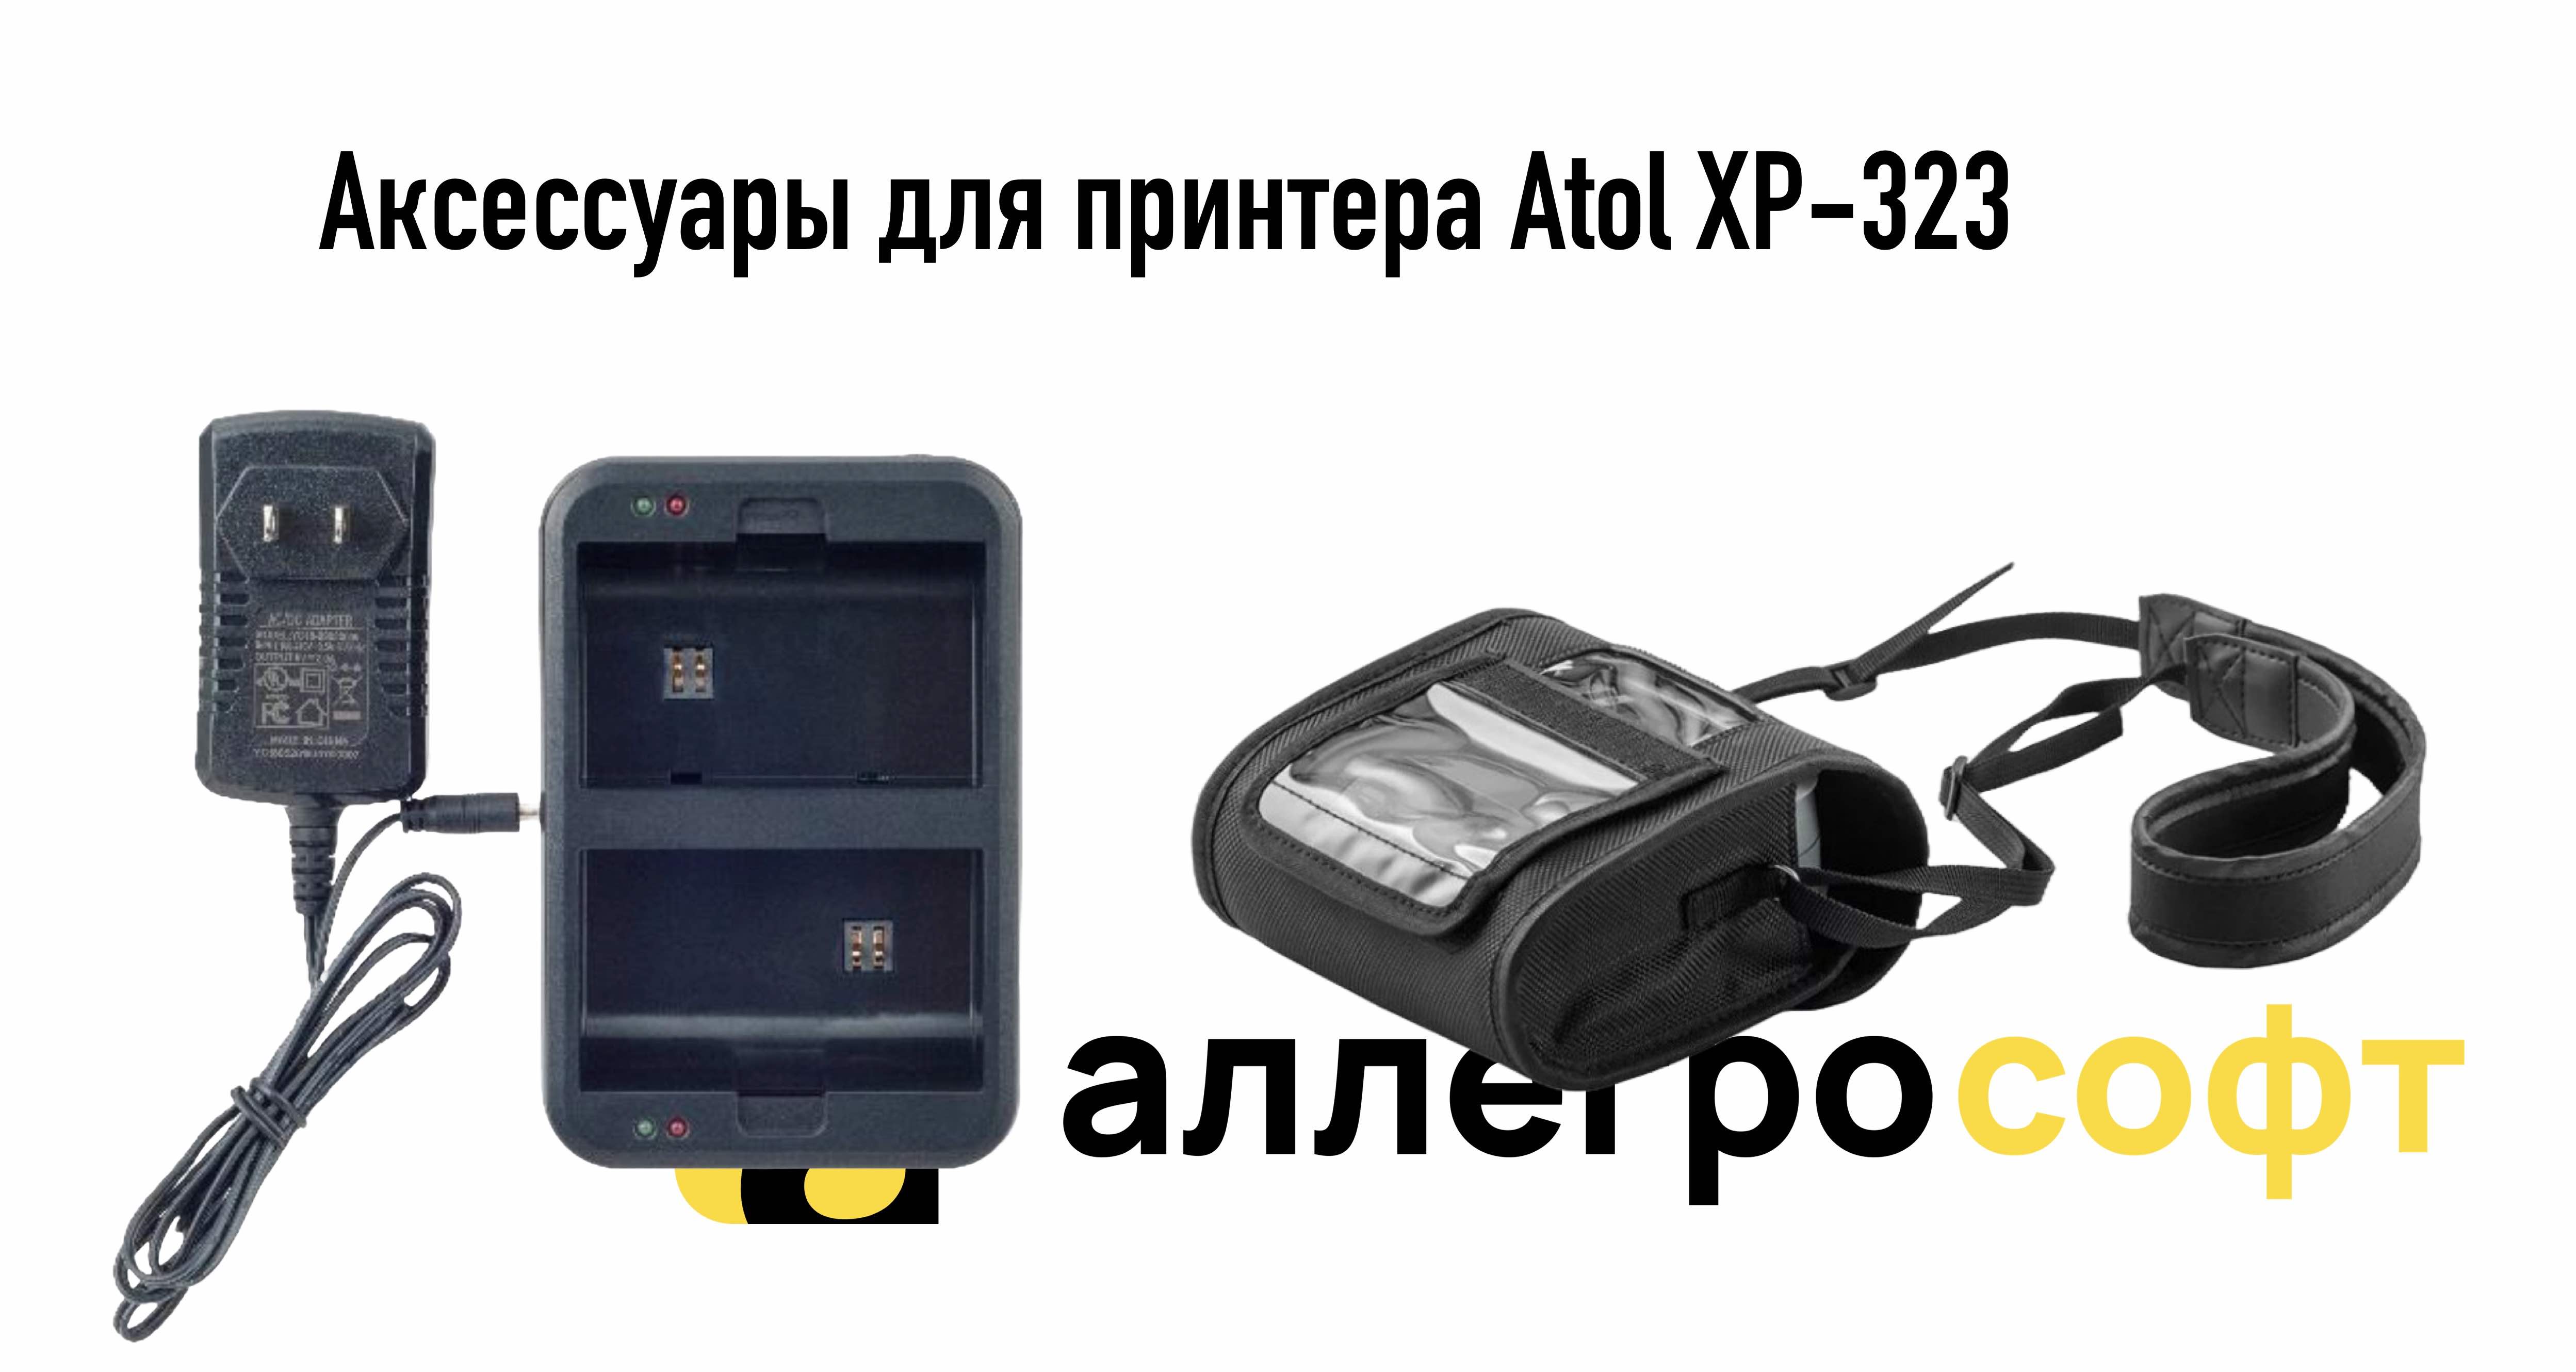 Аксессуары для принтера Atol XP-323